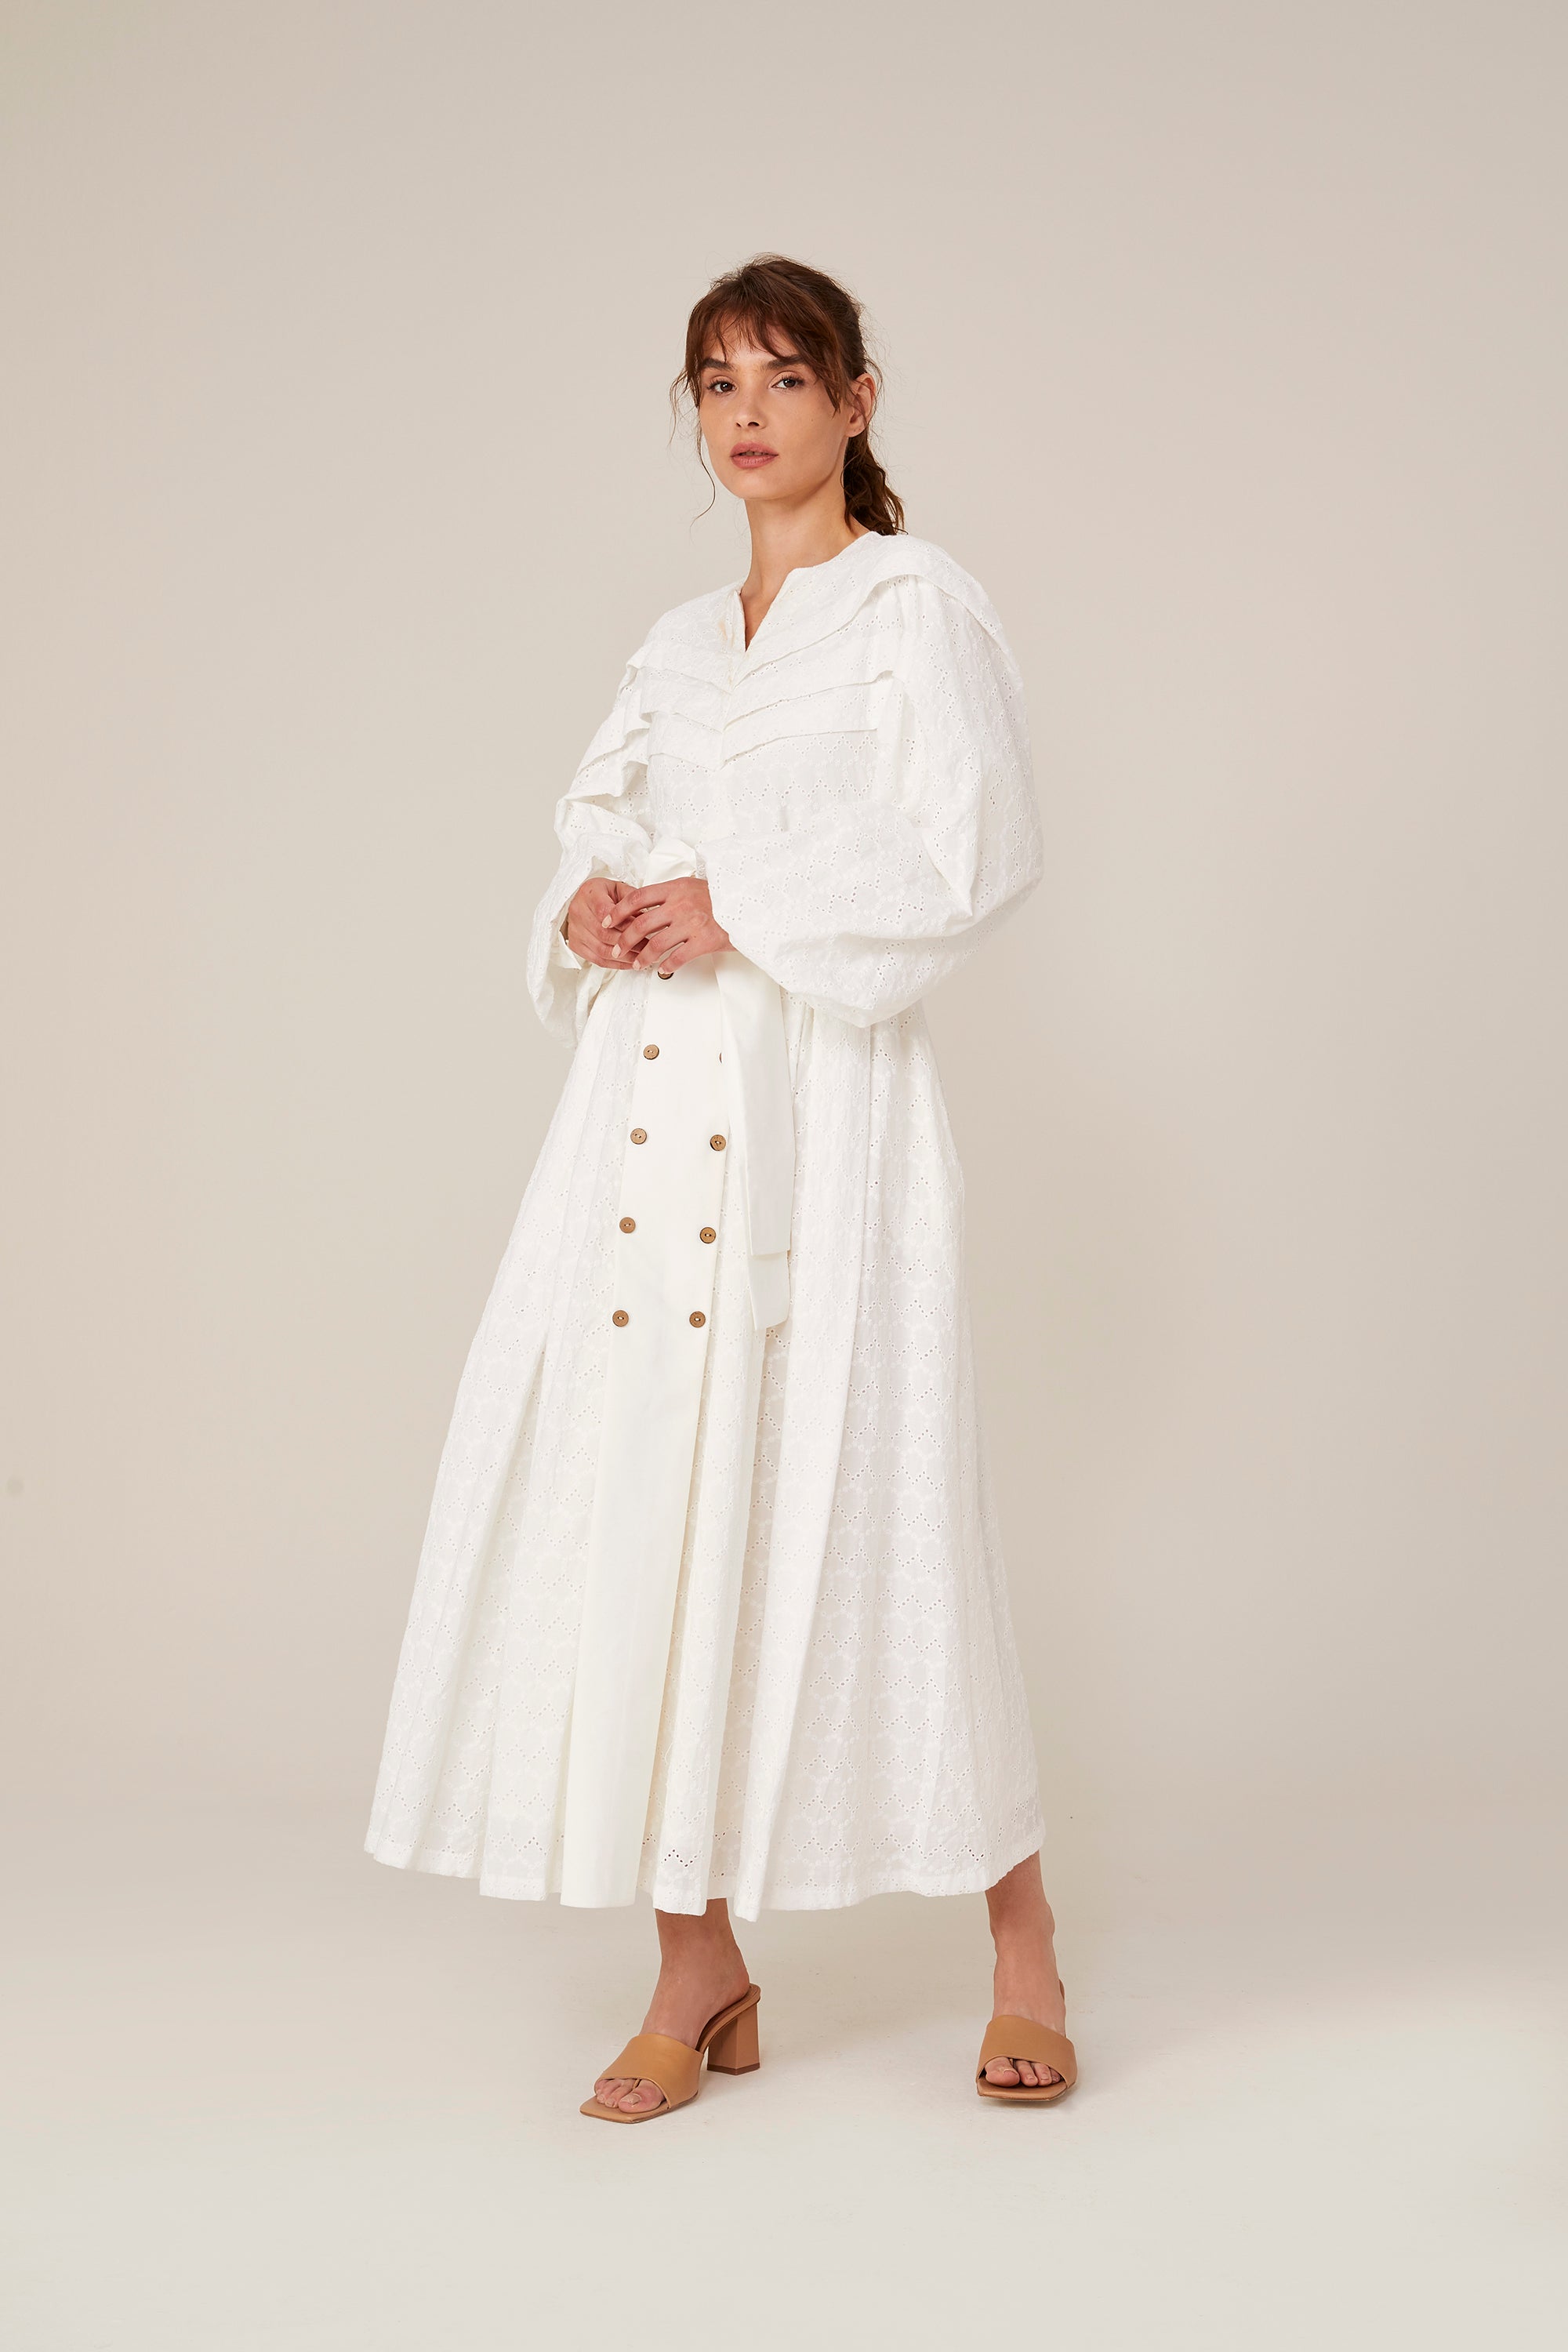 Dress Zurich-White 100% organic cotton🌿